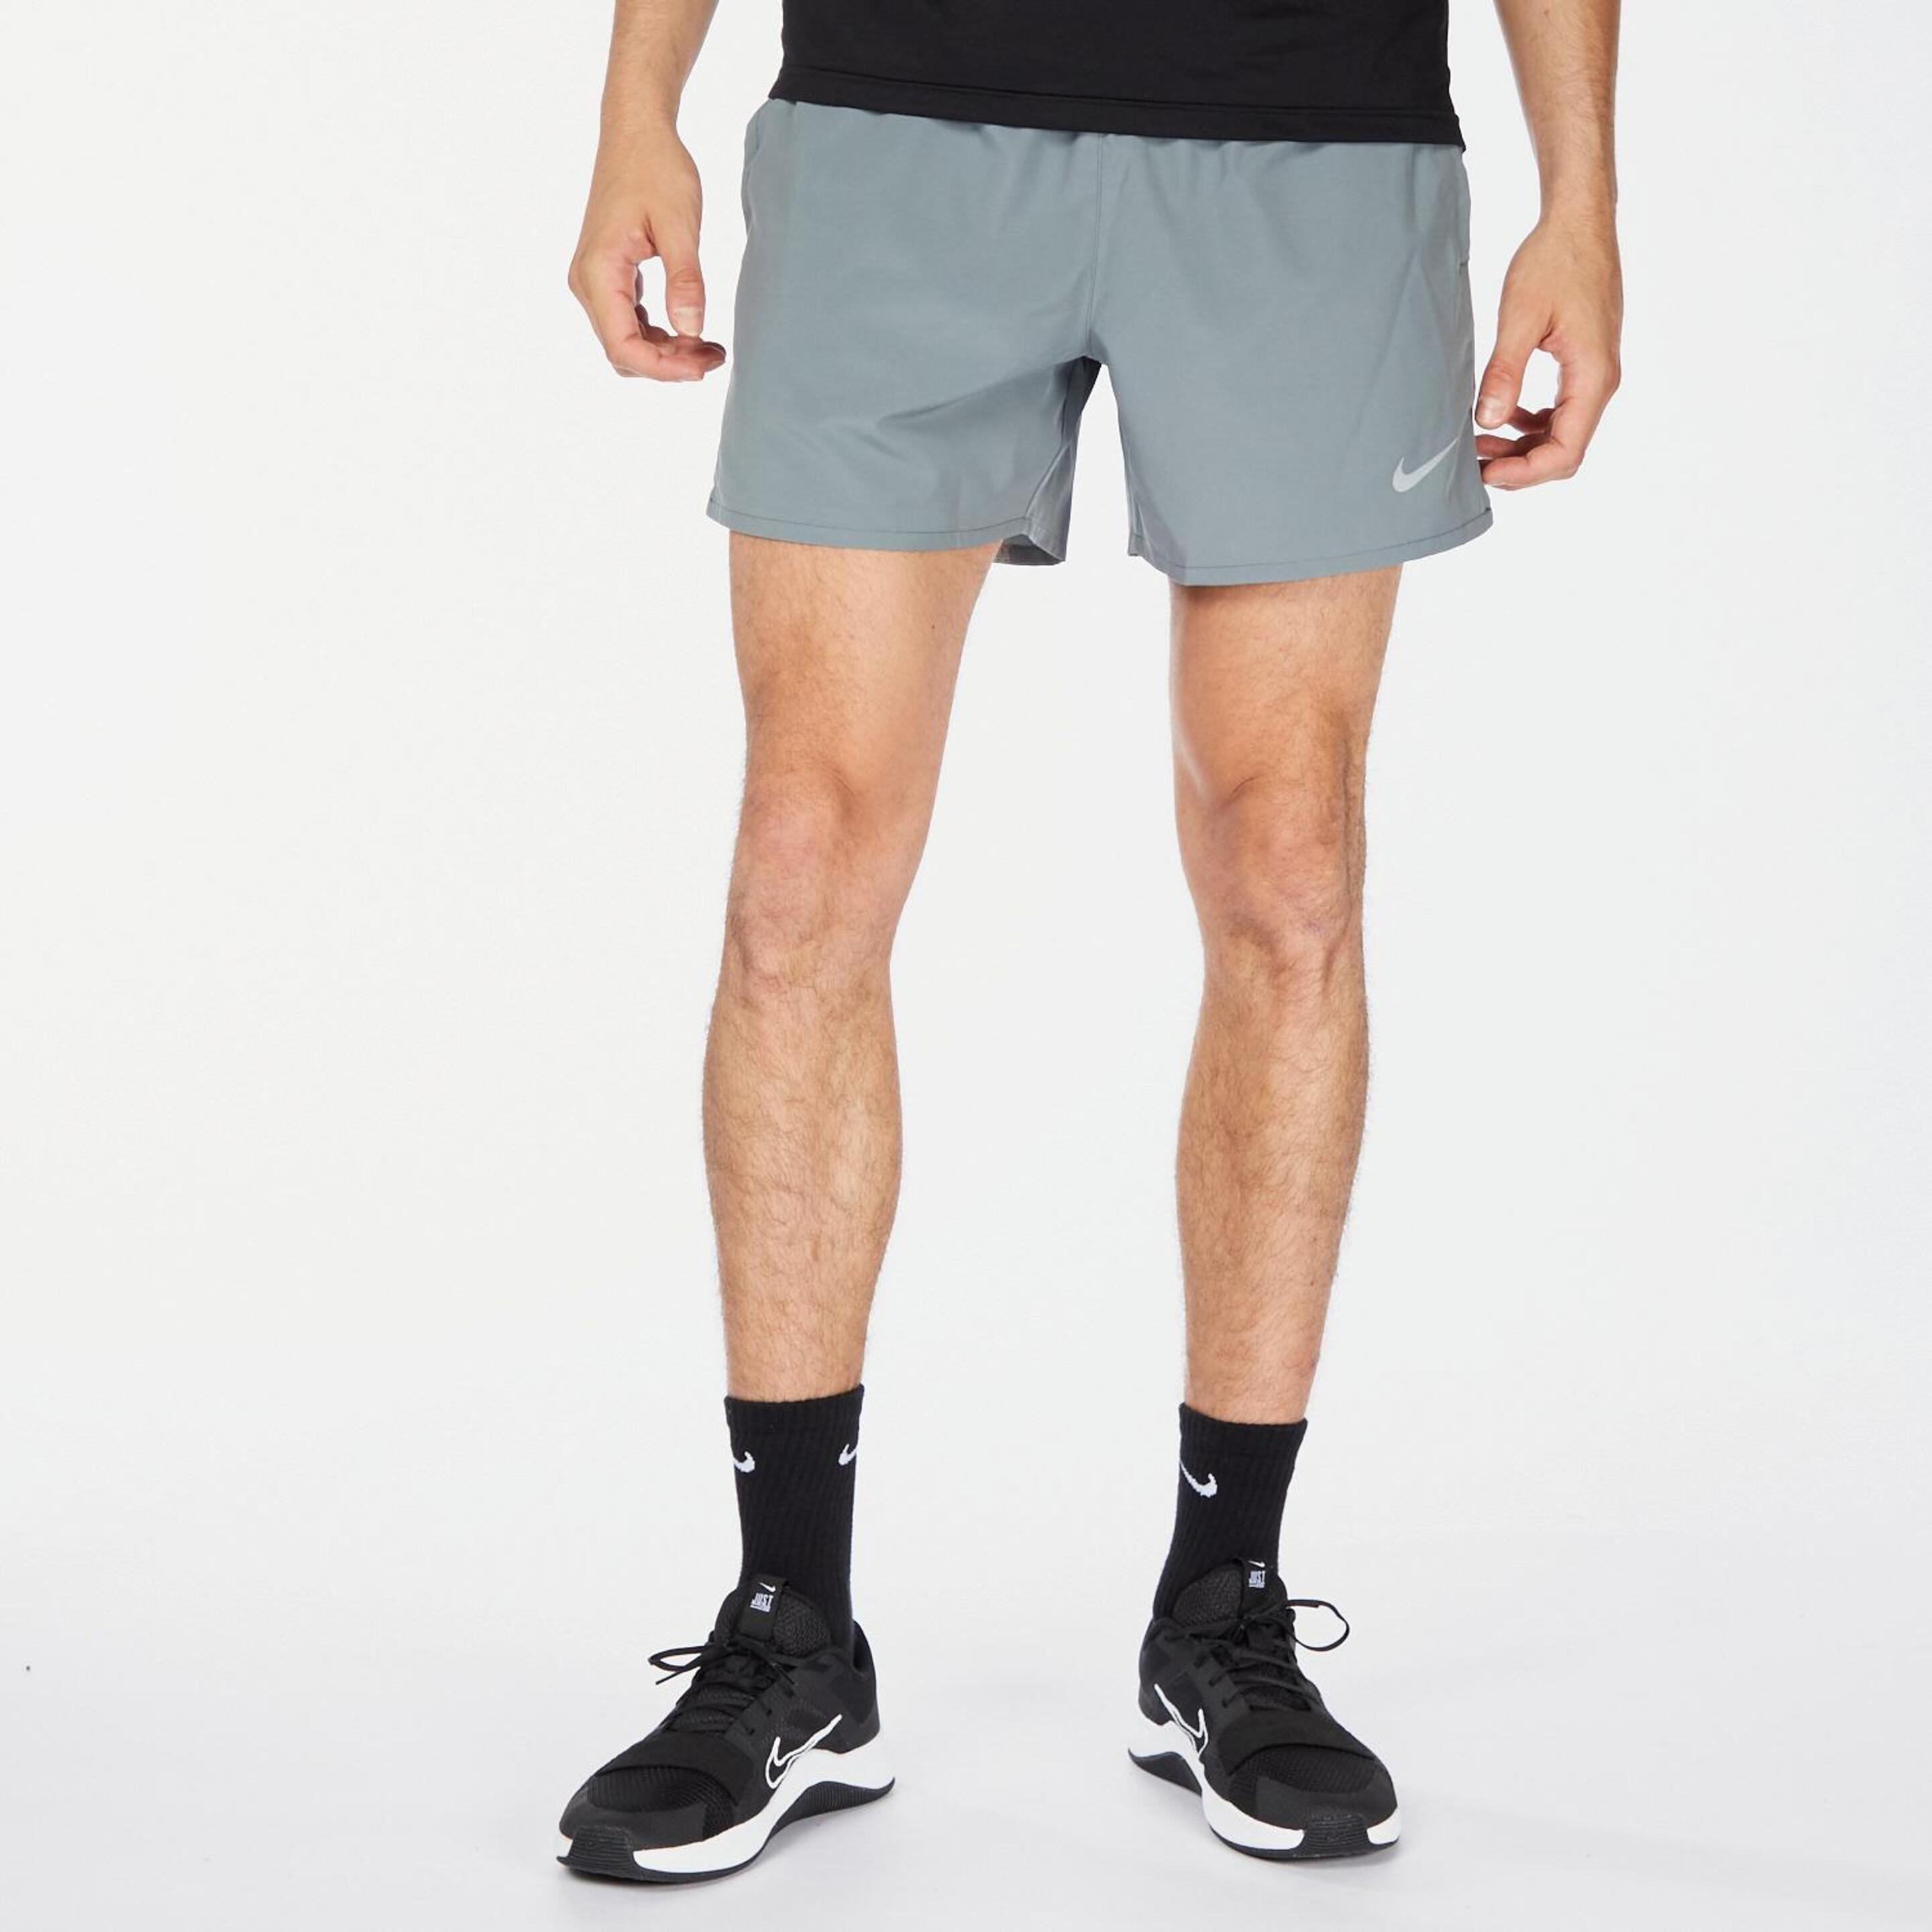 Nike Challenger - gris - Short Running Hombre